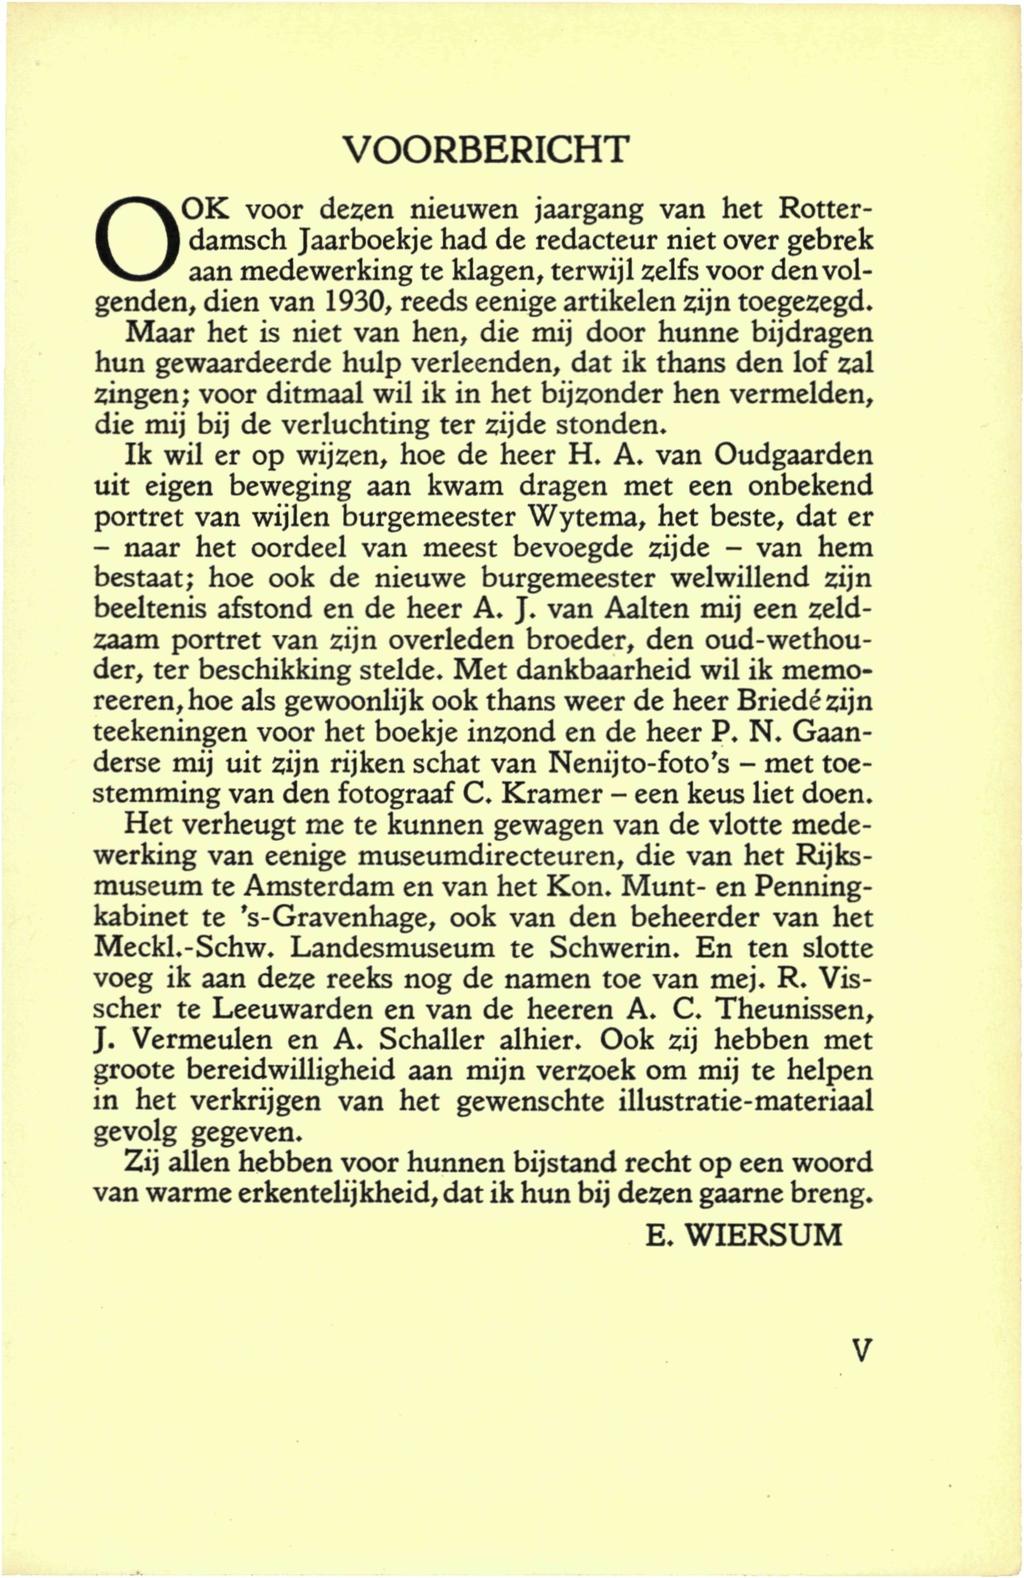 VOORBERICHT OOK voor dezen nieuwen jaargang van het Rotterdamsch Jaarboekje had de redacteur niet over gebrek aan medewerking te klagen, terwijl zelfs voor den volgenden, dien van 1930, reeds eenige